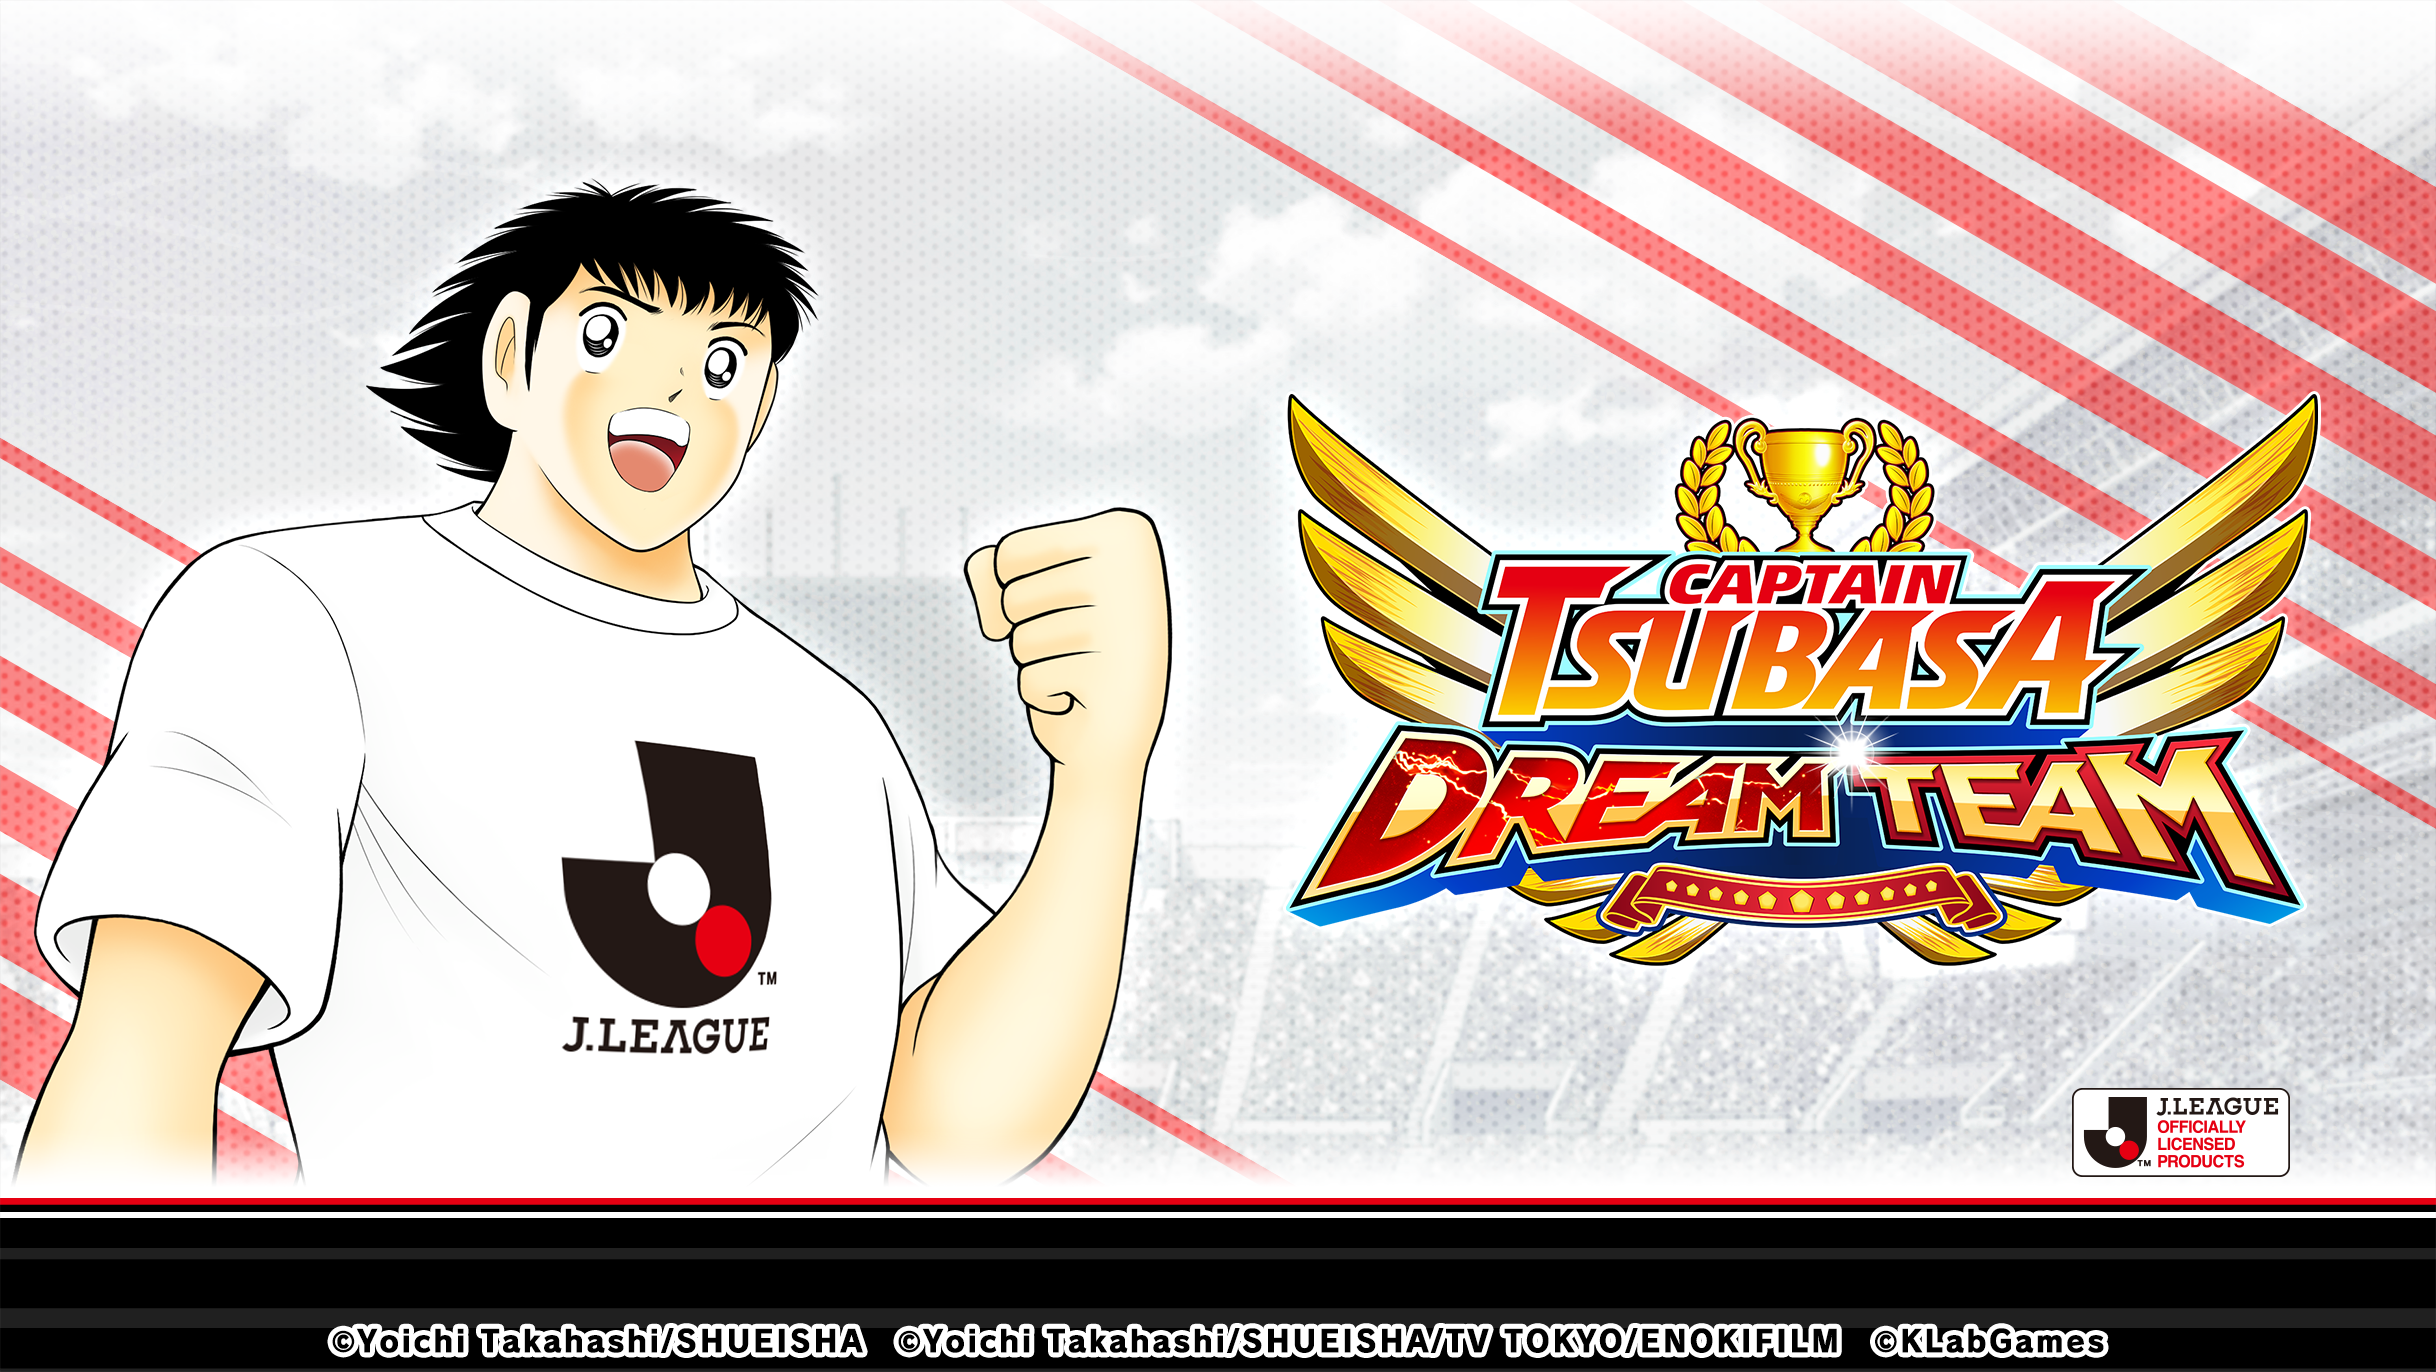 เกม “กัปตันซึบาสะ: ดรีมทีม (Captain Tsubasa: Dream Team)” เปิดตัวตัวละครผู้เล่นใหม่ มิซากิ ทาโร่ ในชุดยูนิฟอร์มทางการ J.League 2022!